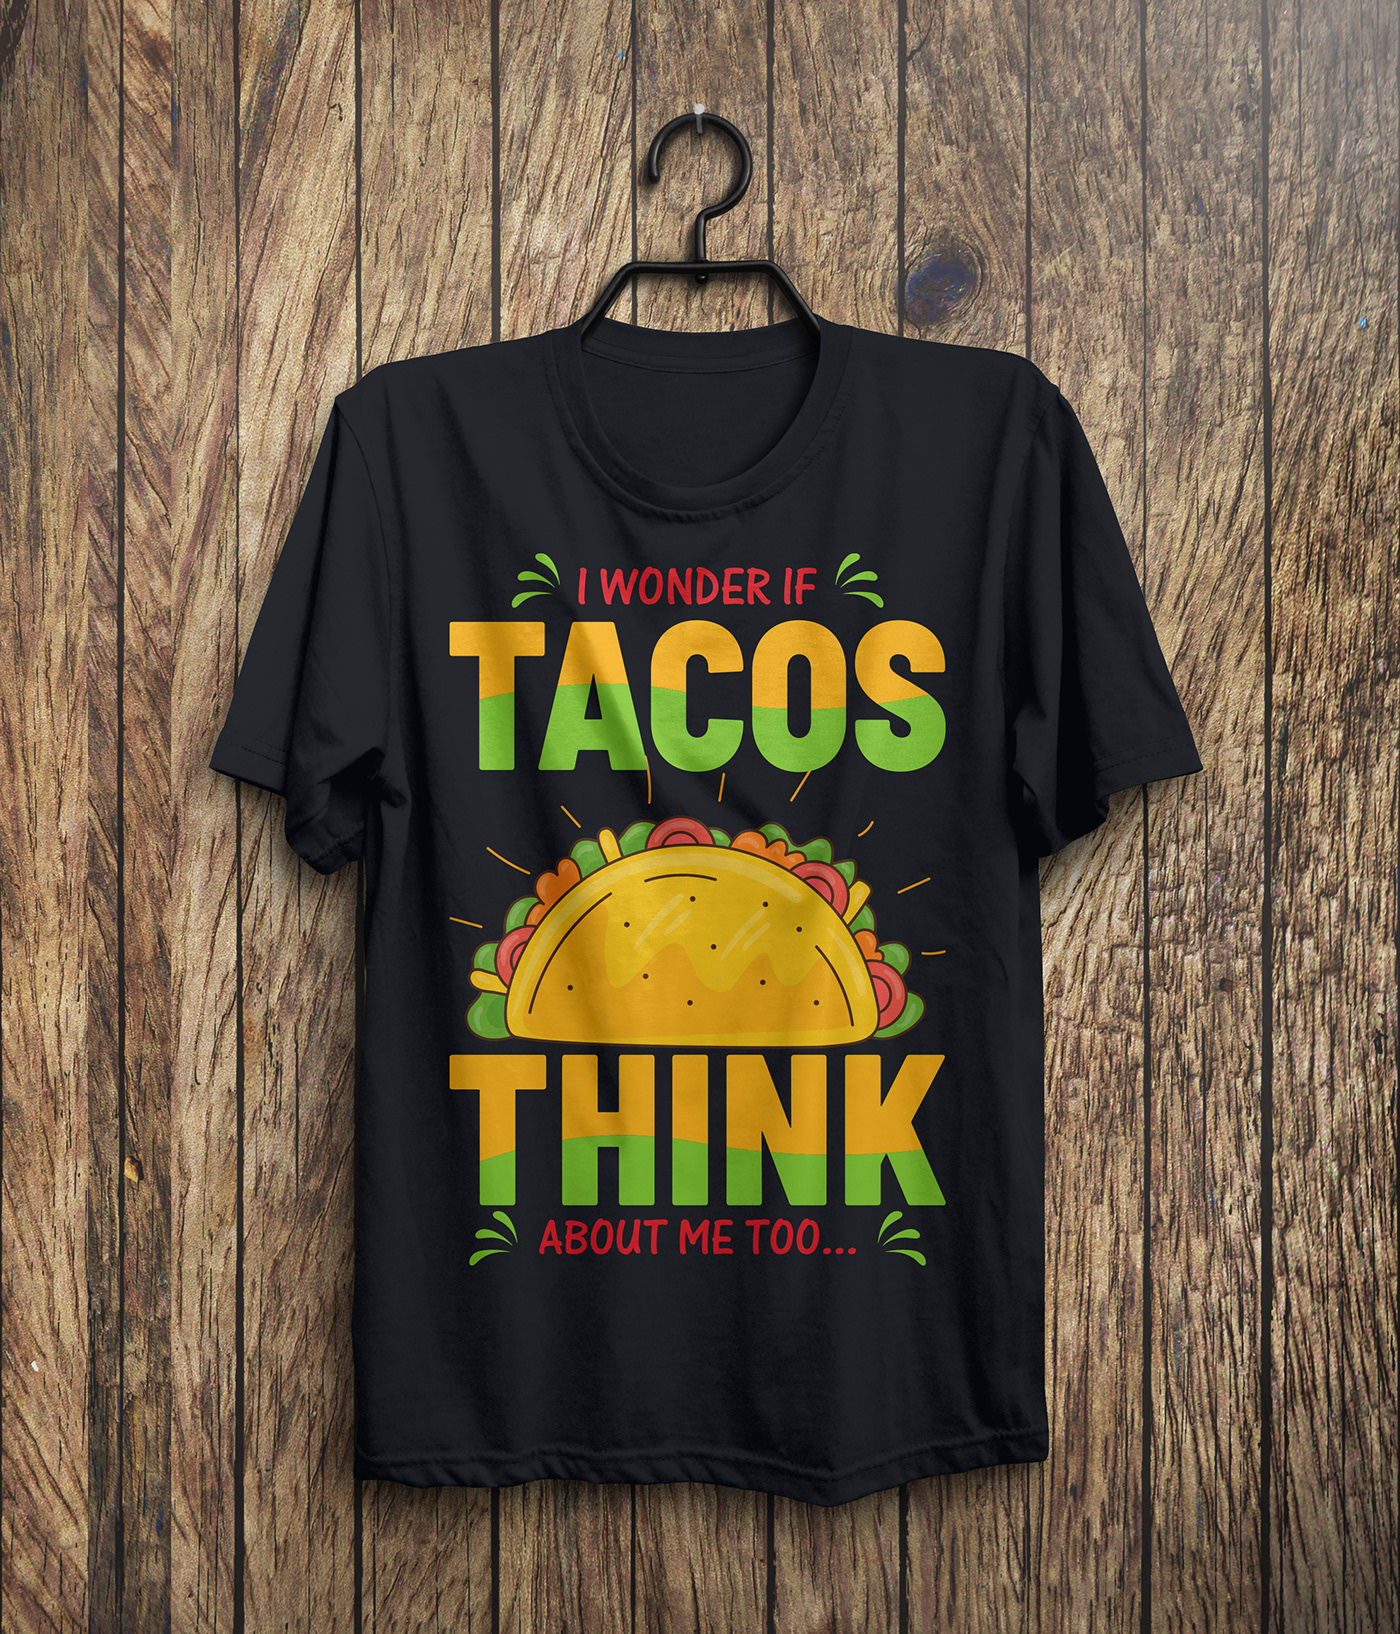 t shirt design tshirt t-shirt T-Shirt Design T shirt designs T Shirt t-shirt illustration design ideas t shirt designer TACOS T SHIRT